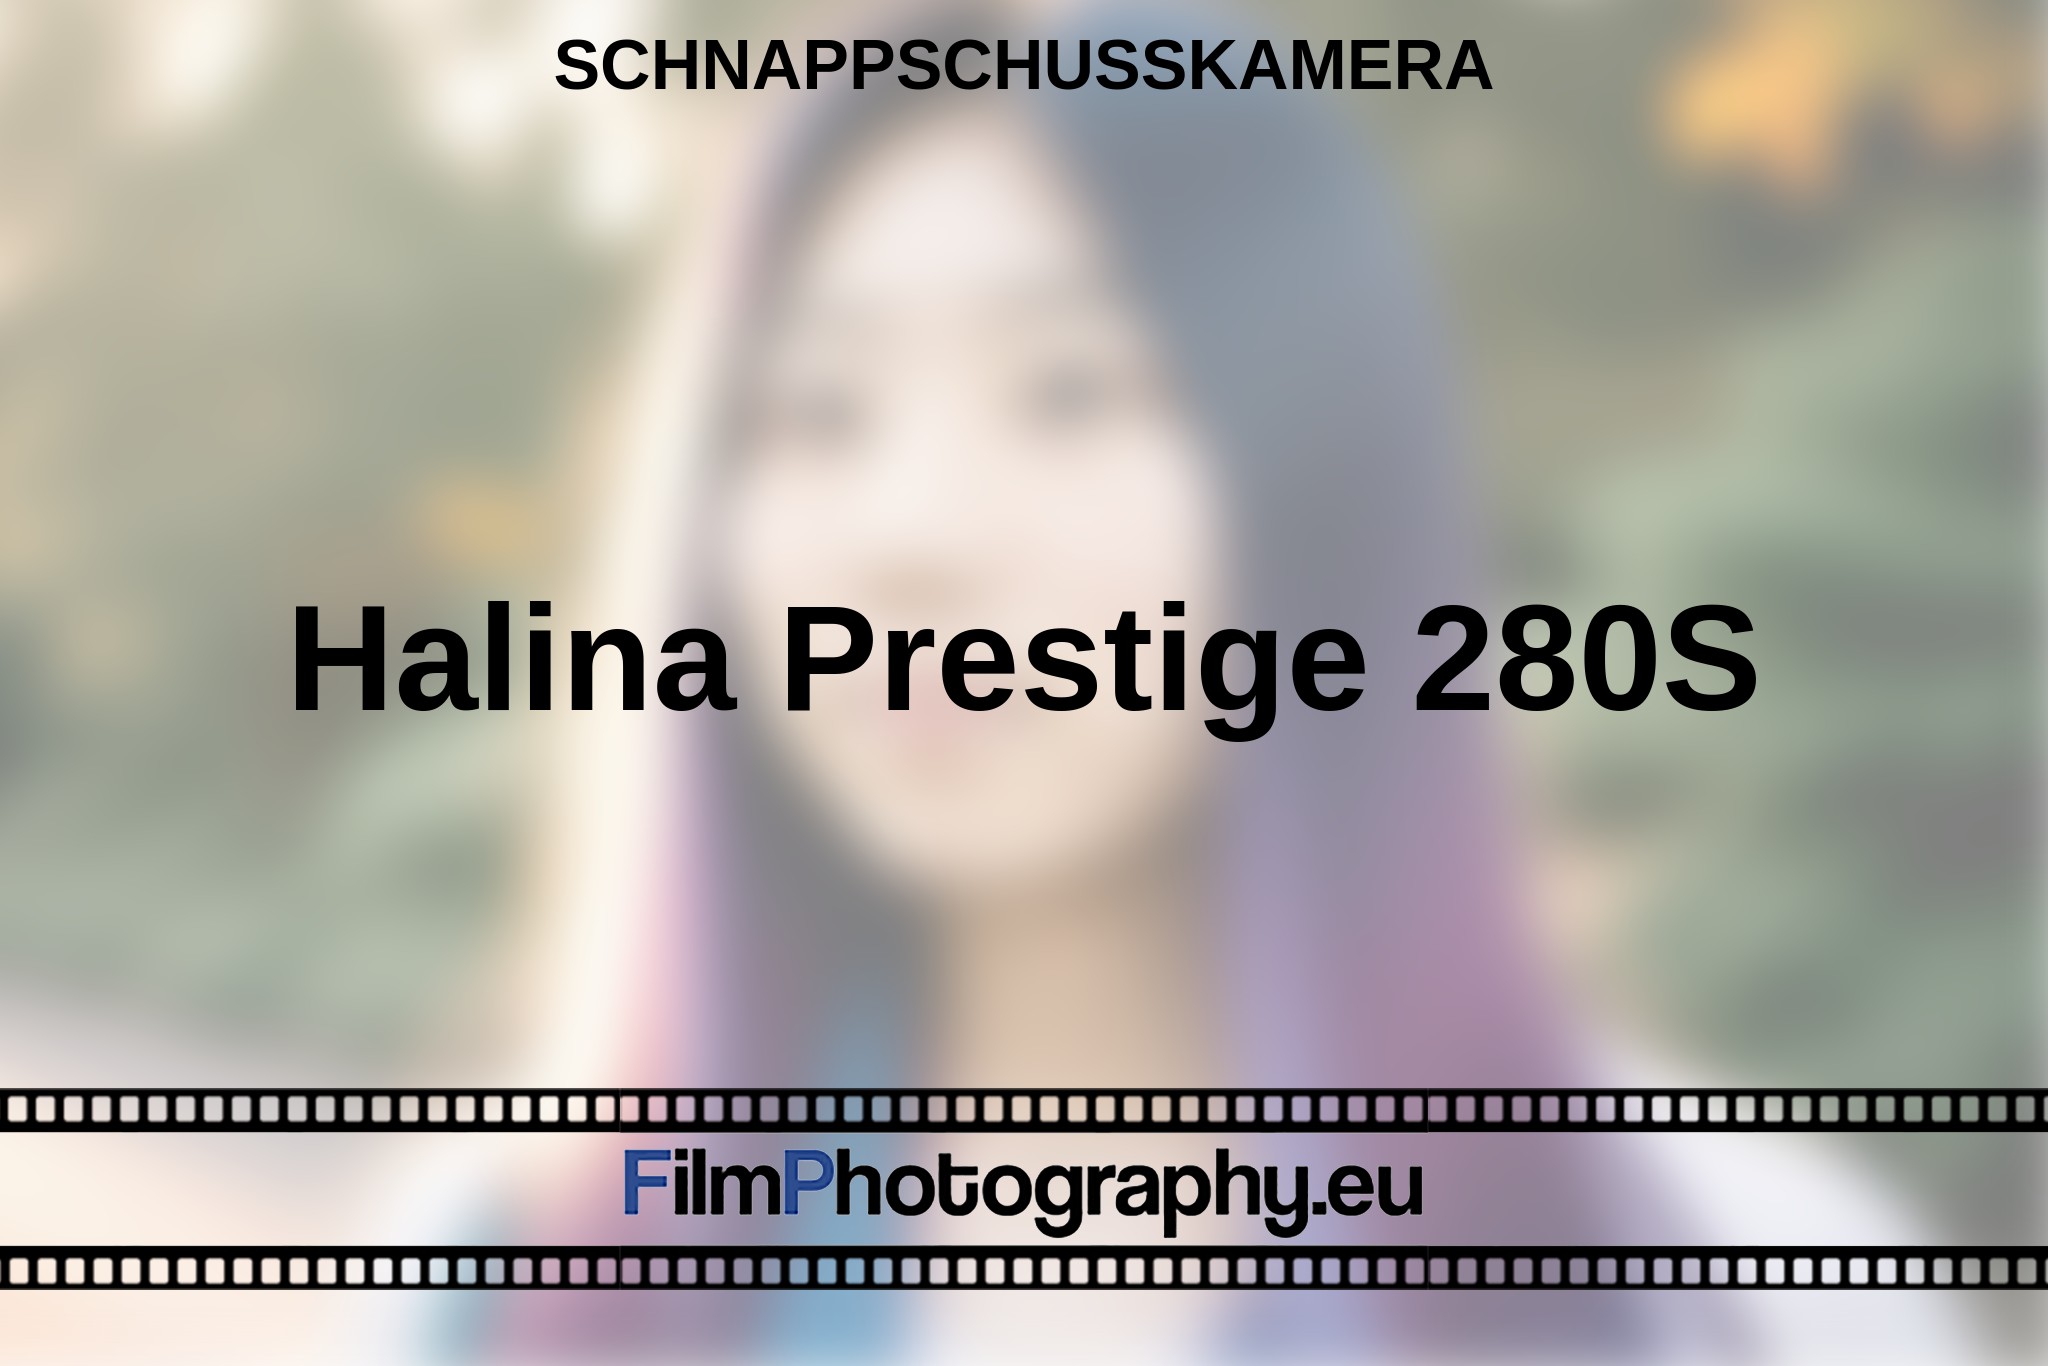 halina-prestige-280s-schnappschusskamera-bnv.jpg